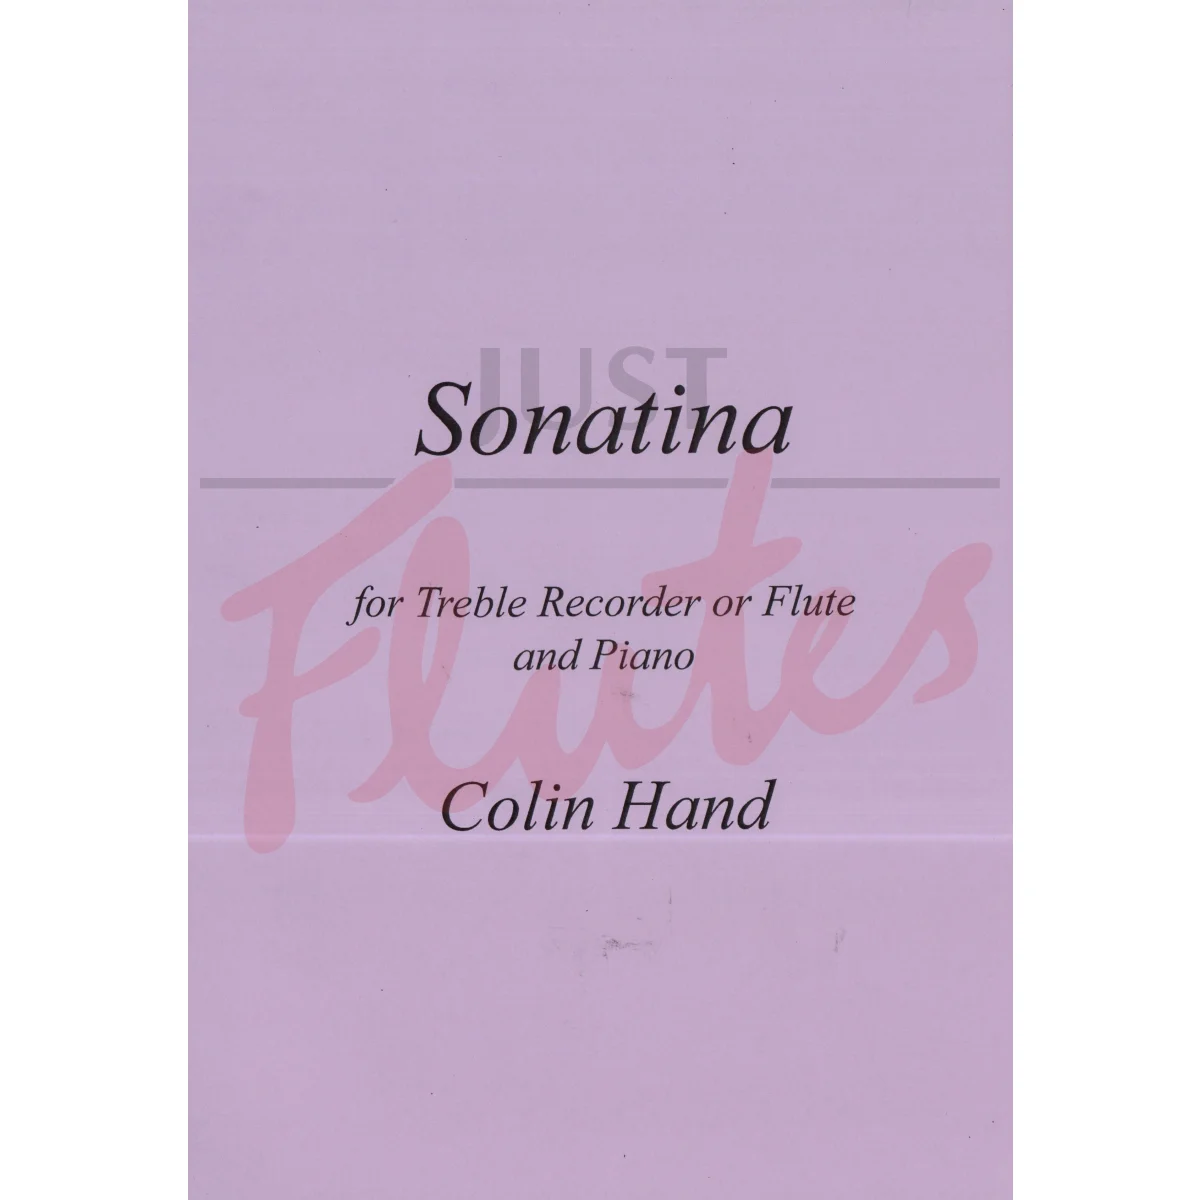 Sonatina for Flute/Treble Recorder and Piano